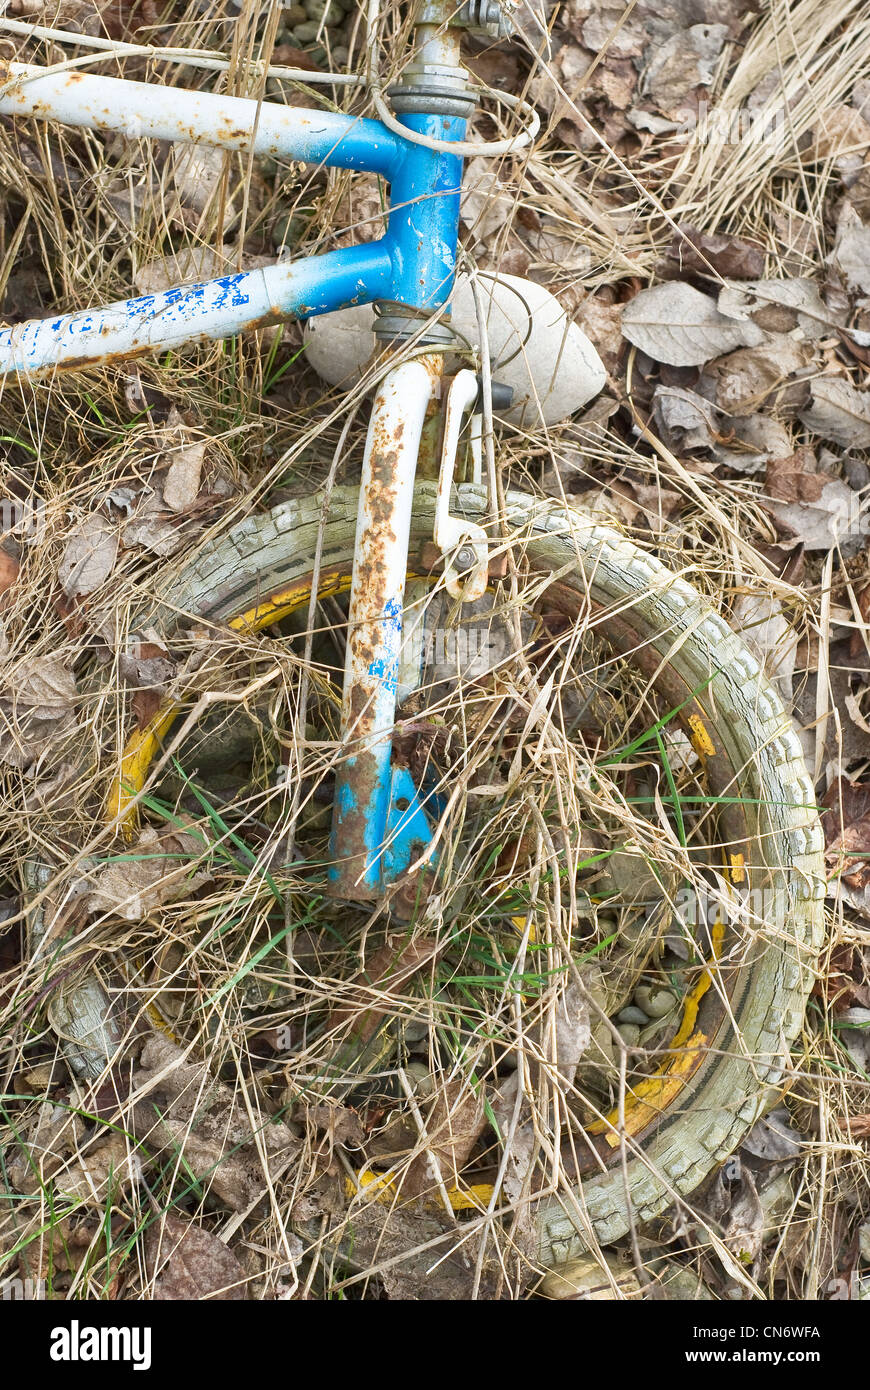 Alte und verlassene Fahrrad als alltägliche Umweltverschmutzung Stockfoto